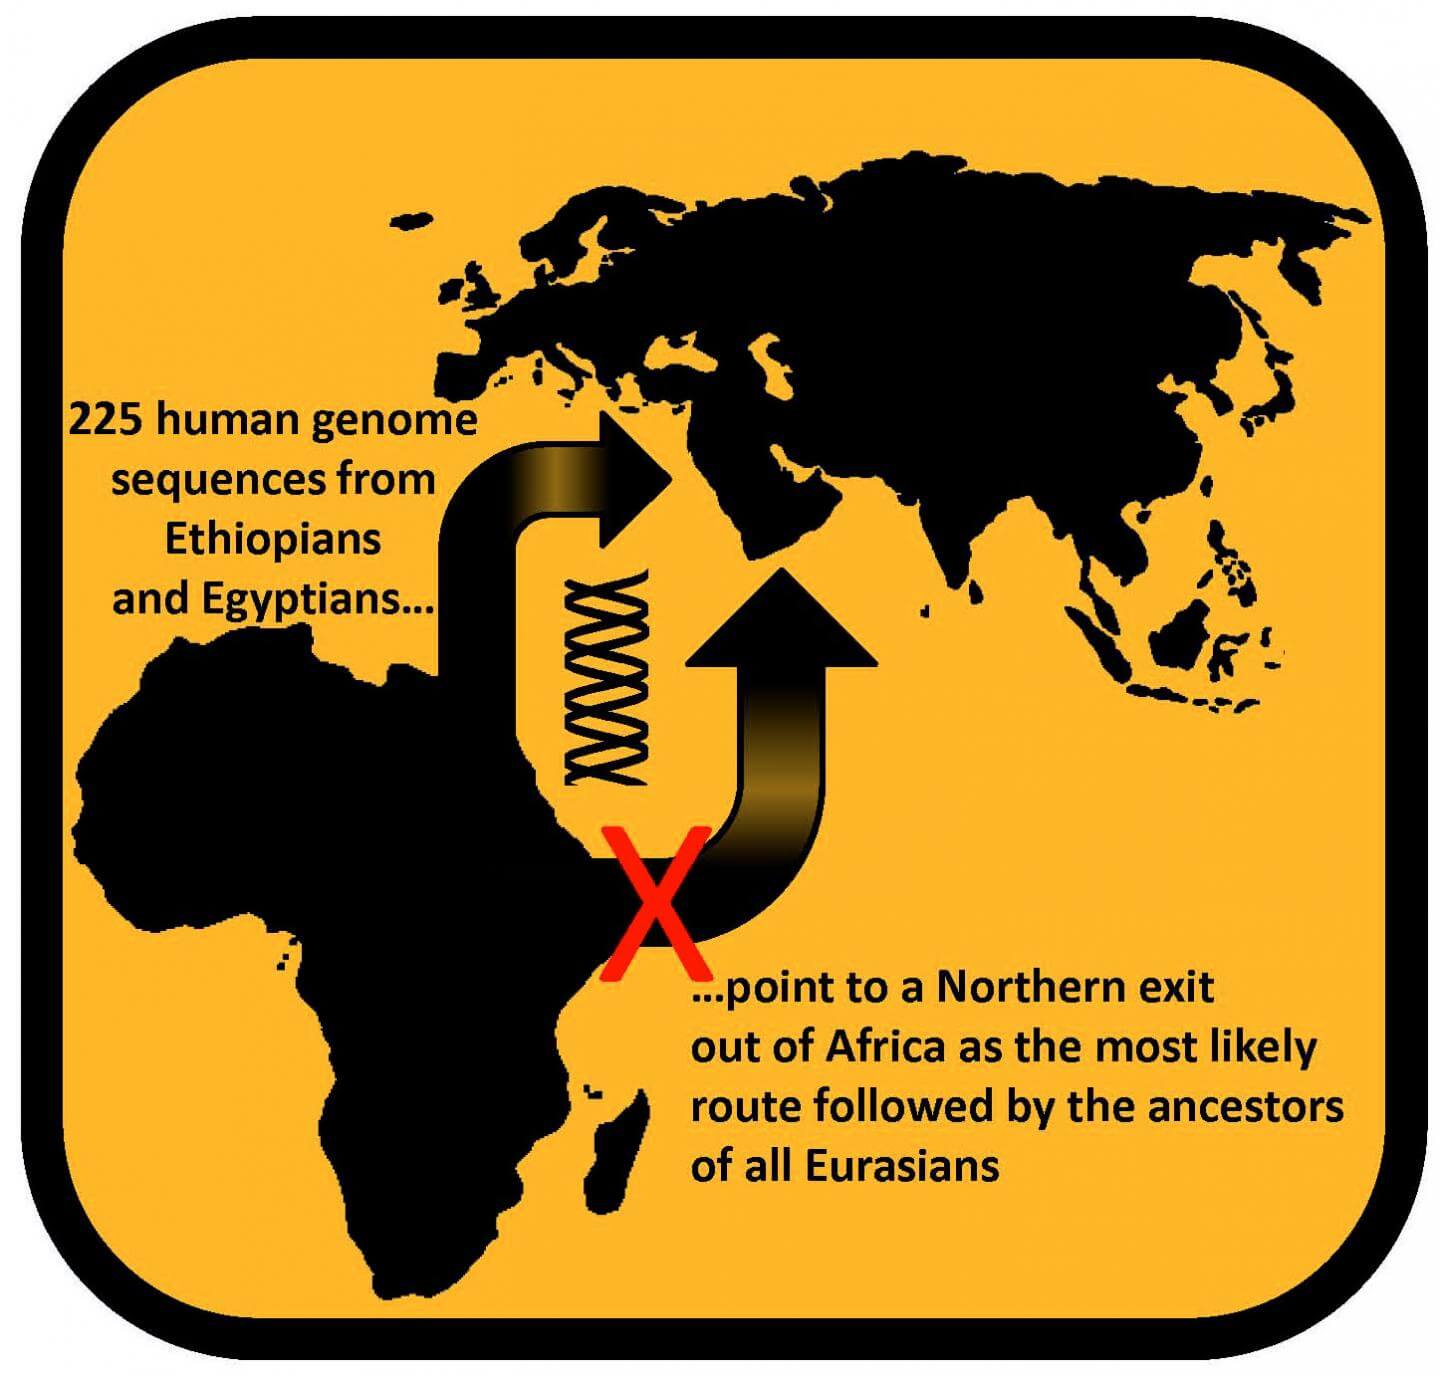 רצף גנום מ-225 אתיופים ומצרים הוביל לכך שהיציאה מאפריקה נעשתה דרך מצרים ומשם התפשטו בני האדם לכל איראסיה. איור: לוקה פגאני.